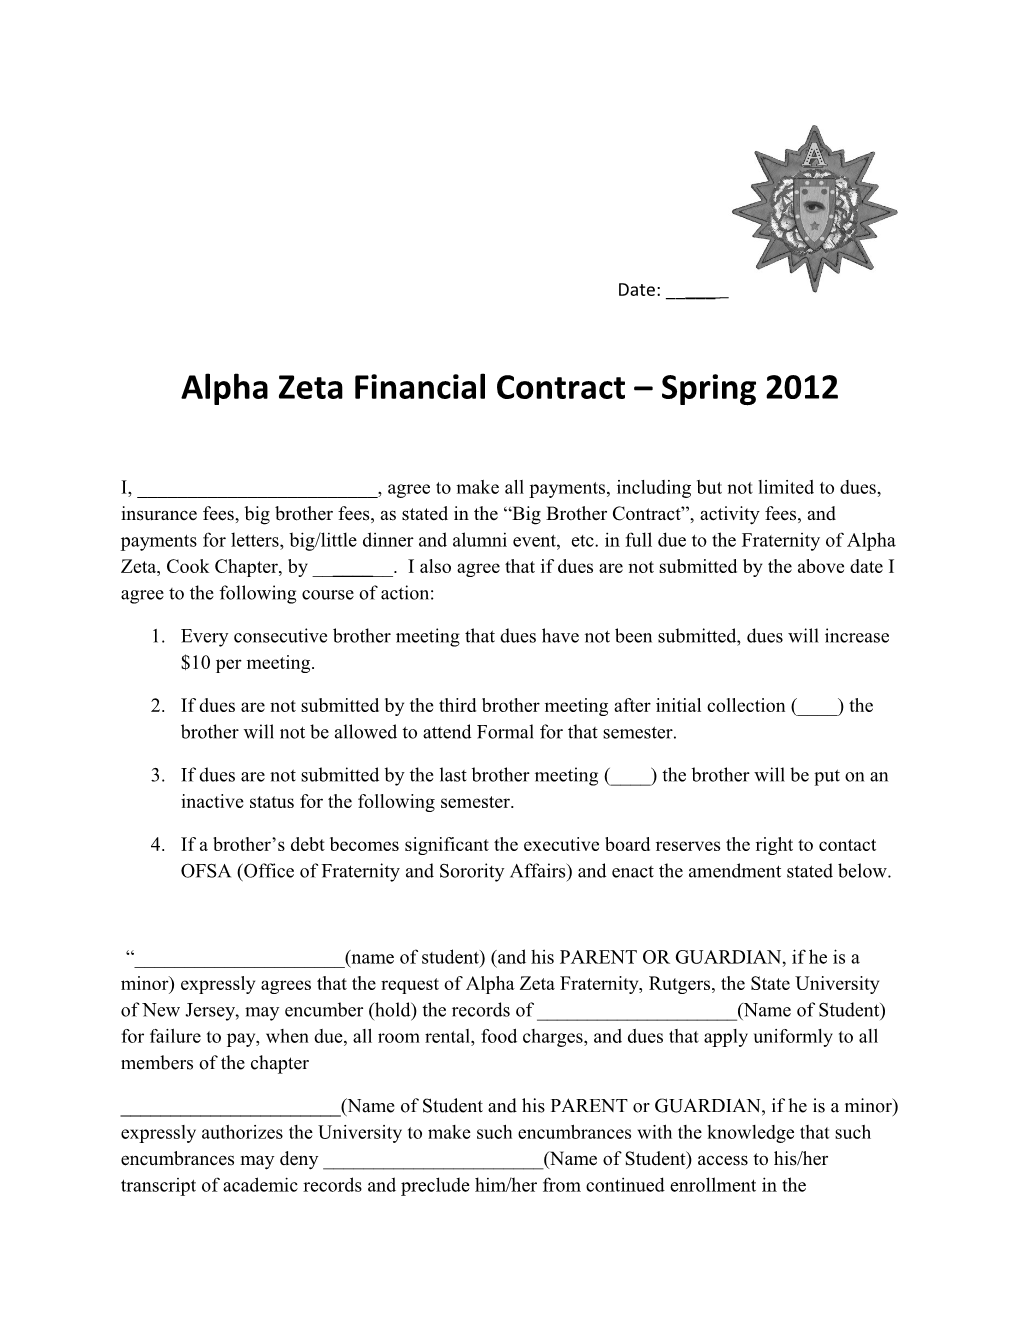 Alpha Zeta Financial Contract Spring 2012